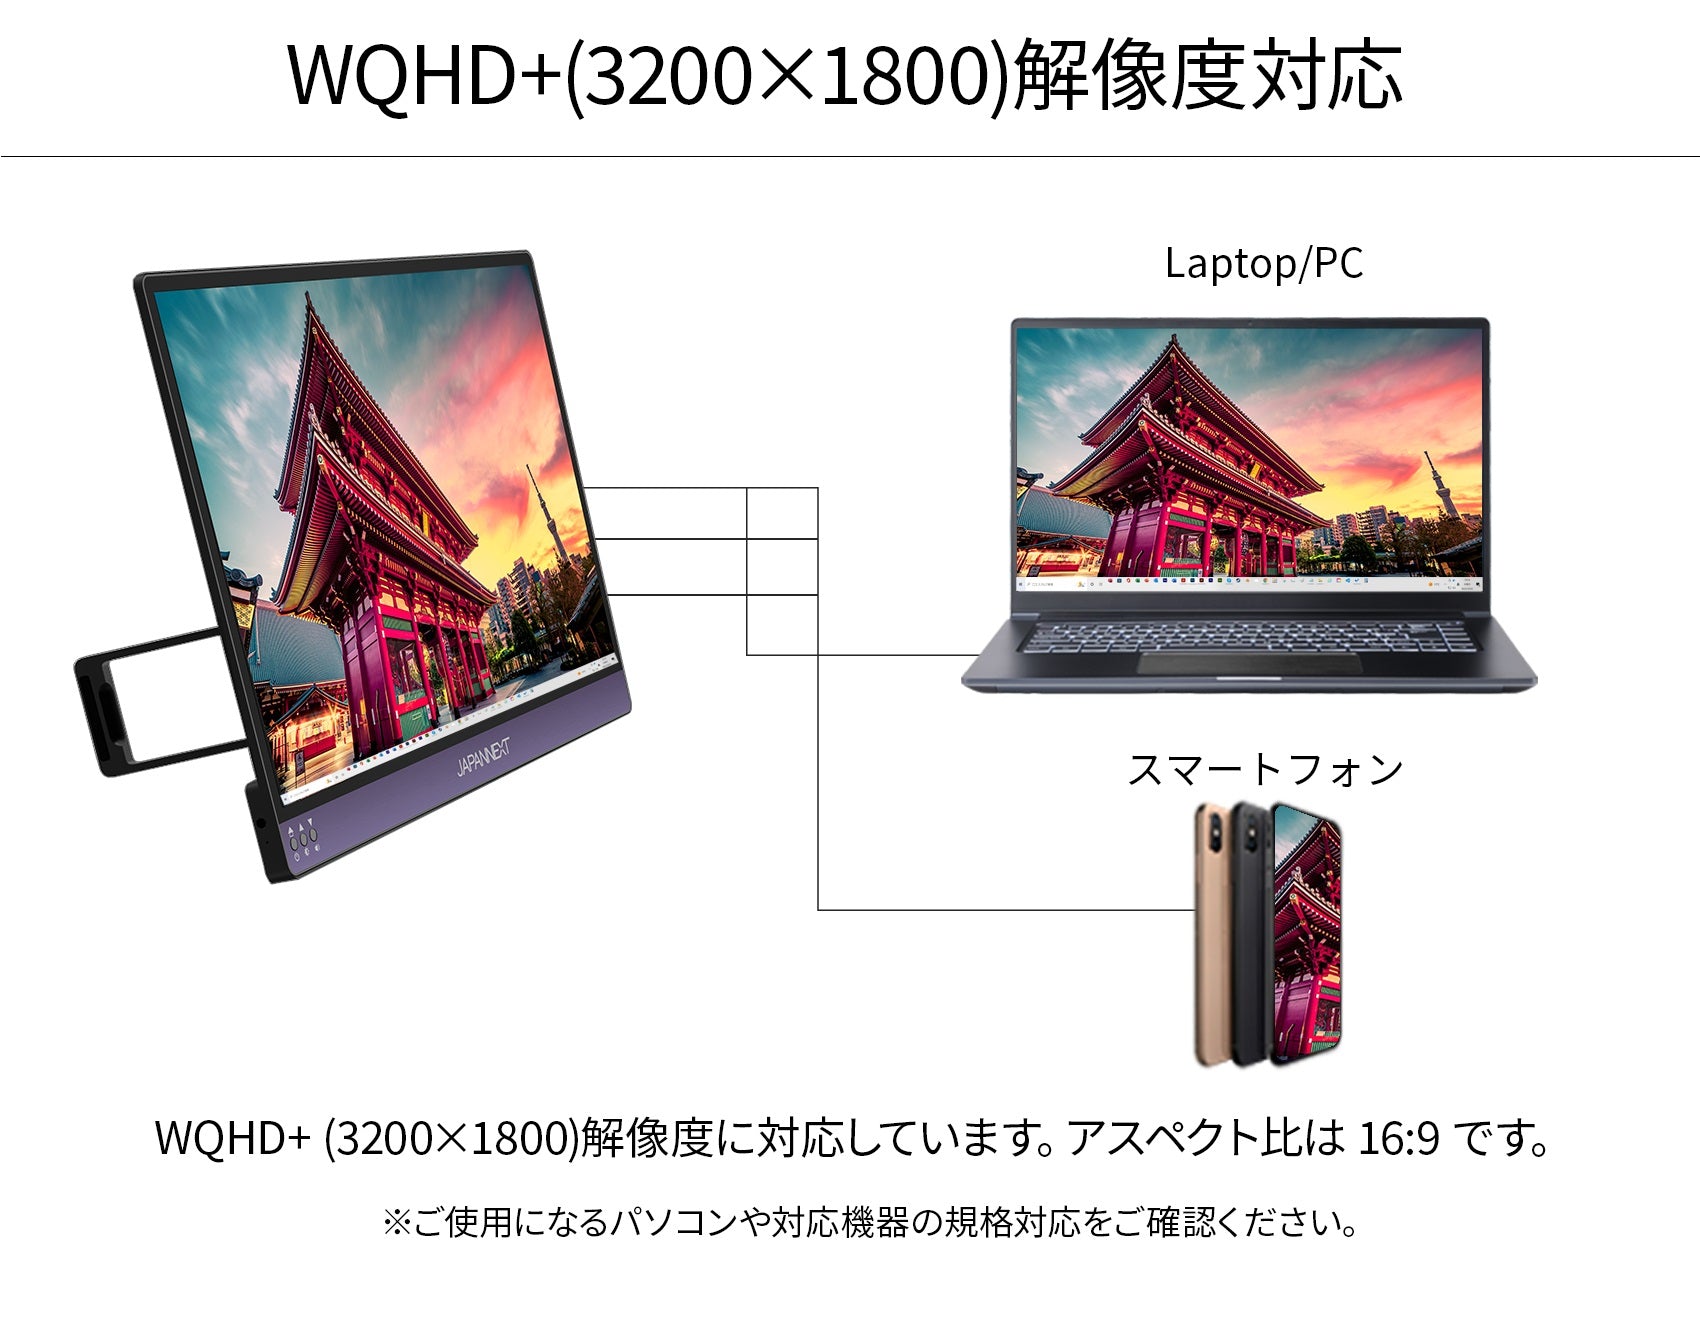 JAPANNEXT　モバイルモニター13.3型 /WQHD(2560×1440)